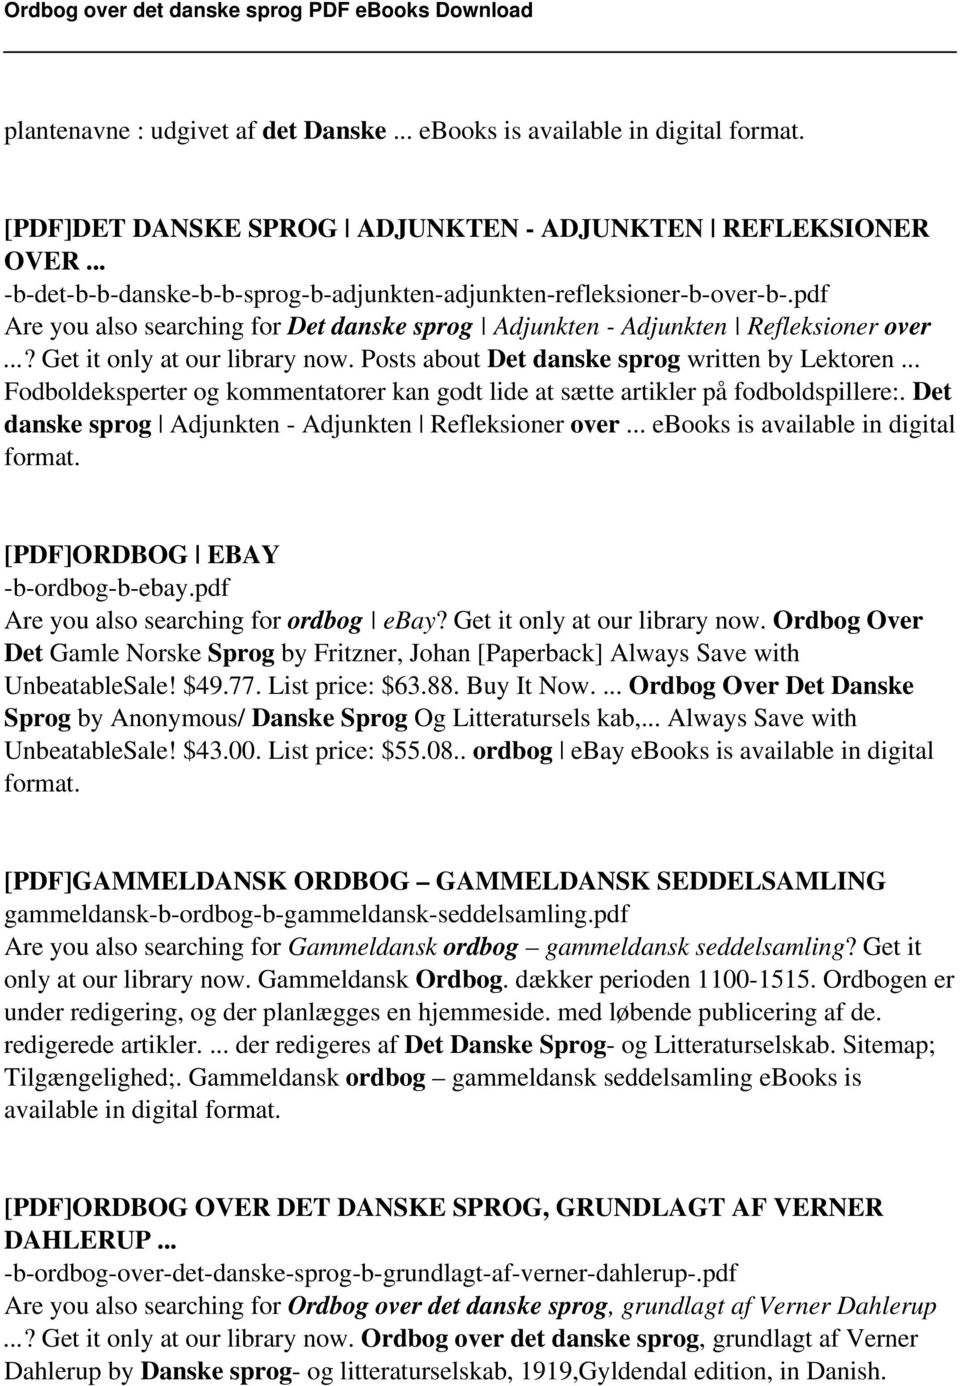 Ordbog over sprog - PDF Free Download